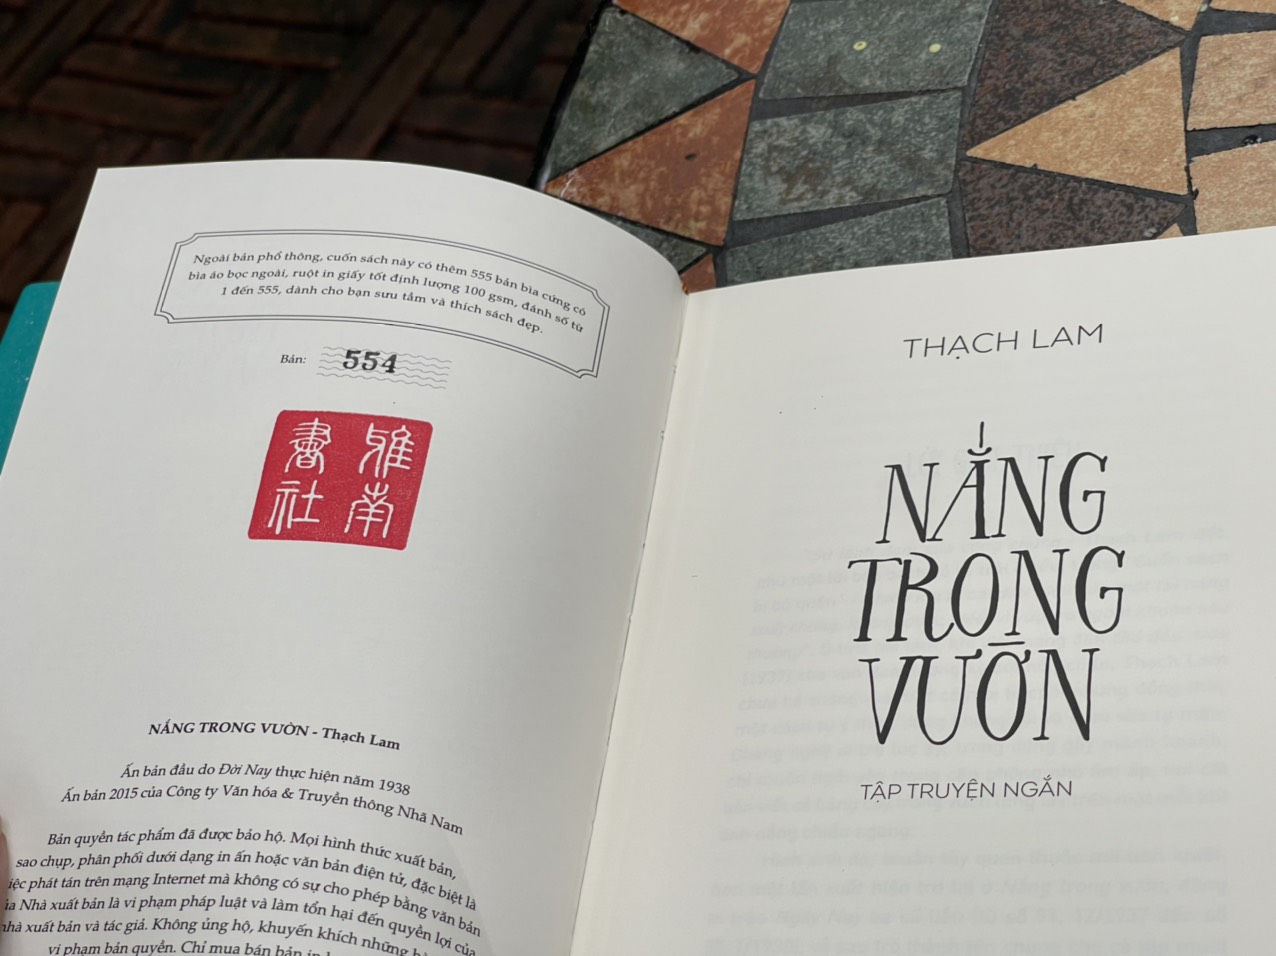 [Bìa cứng giới hạn S555 Việt Nam danh tác] – NẮNG TRONG VƯỜN (tập truyện ngắn) - Thạch Lam – Nhã Nam